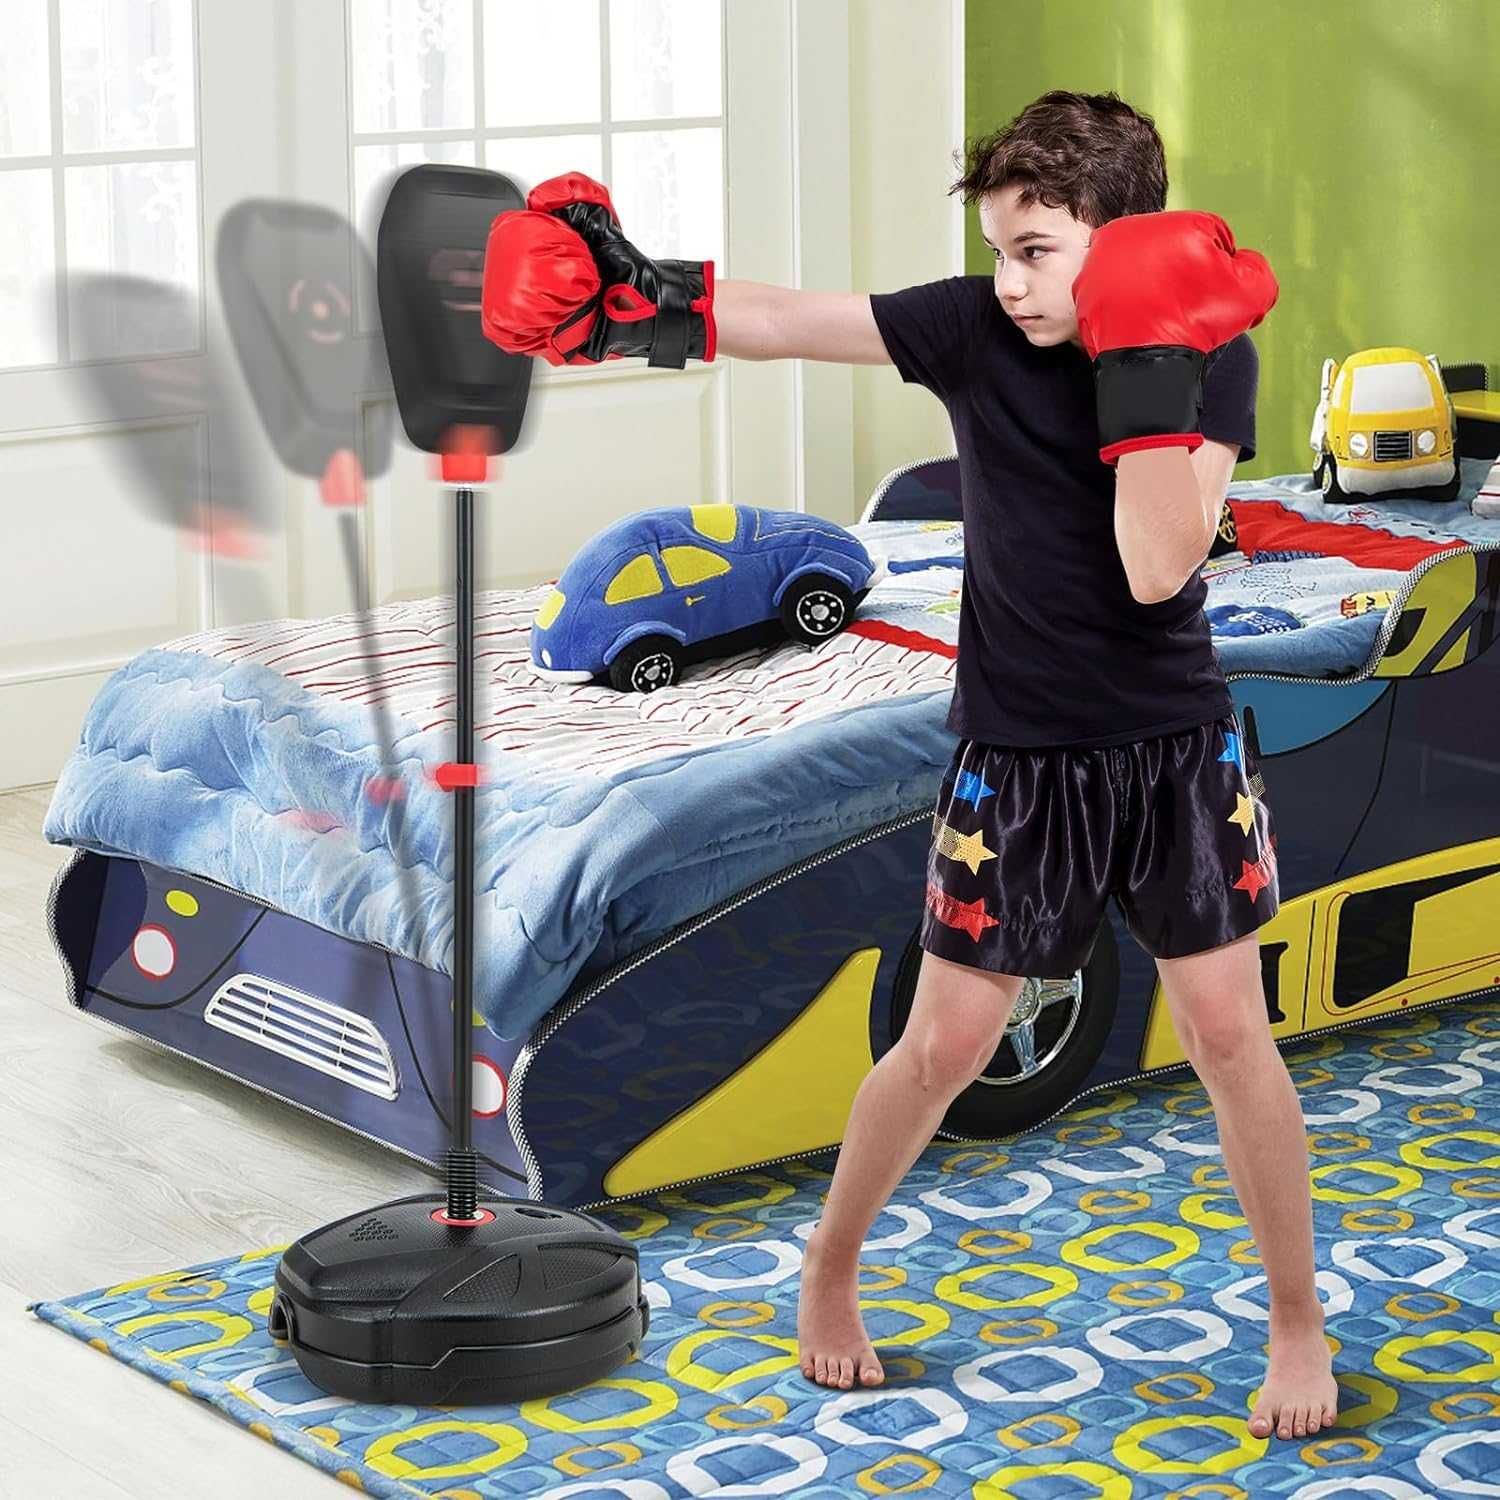 NOWA tarcza do boksu worek treningowy bokserski dla dzieci + RĘKAWICE